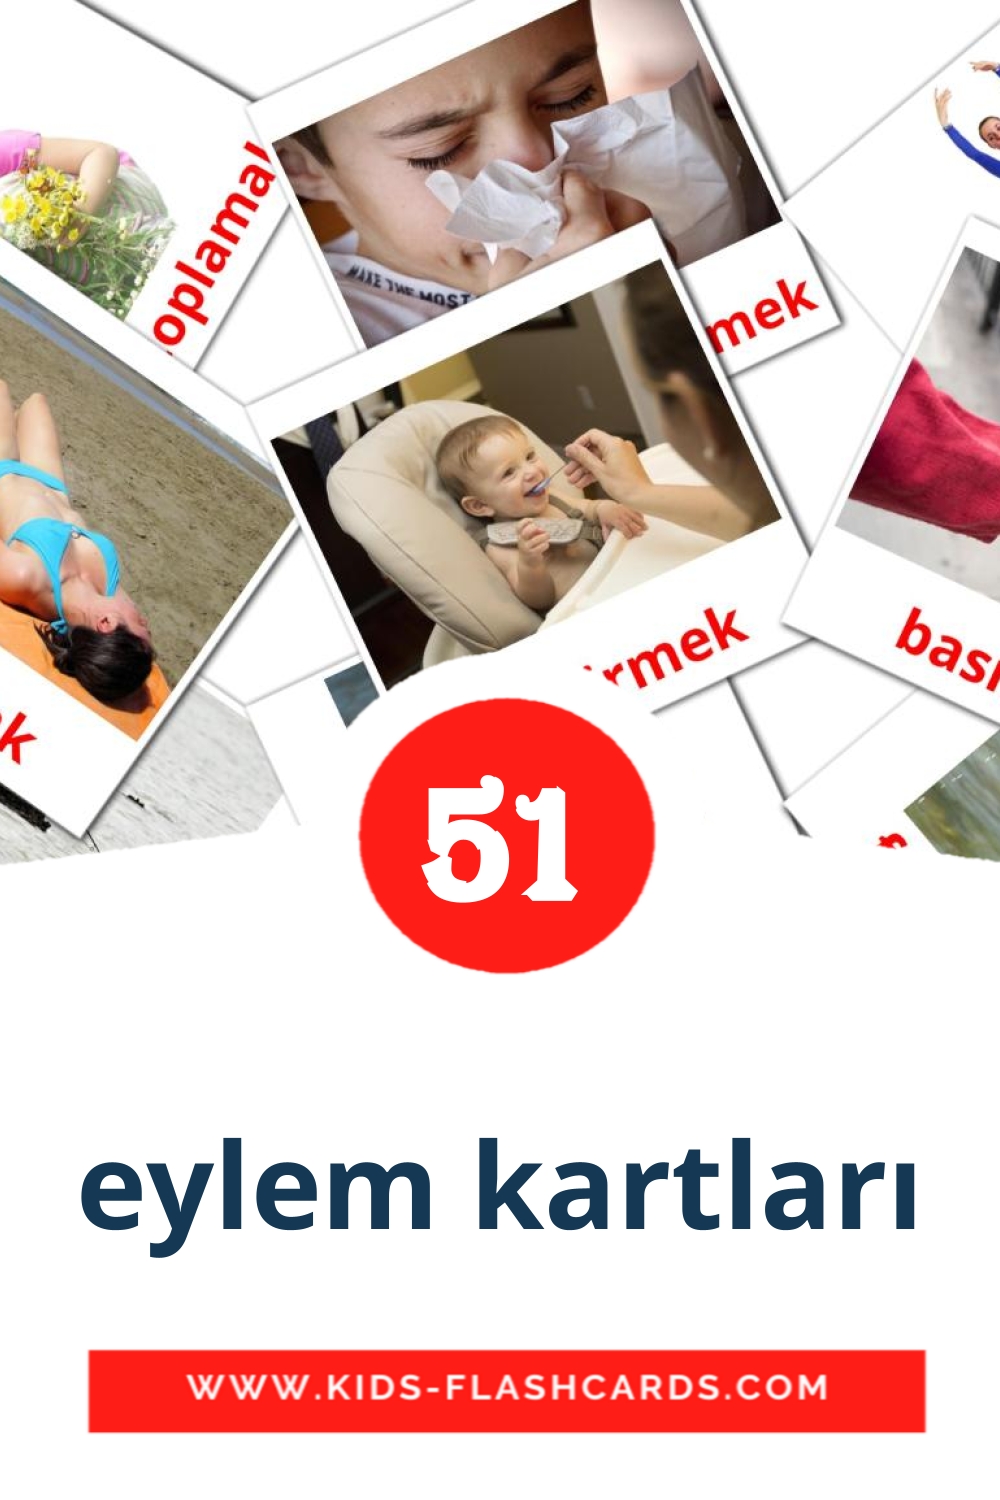 54 eylem kartları Picture Cards for Kindergarden in turkish